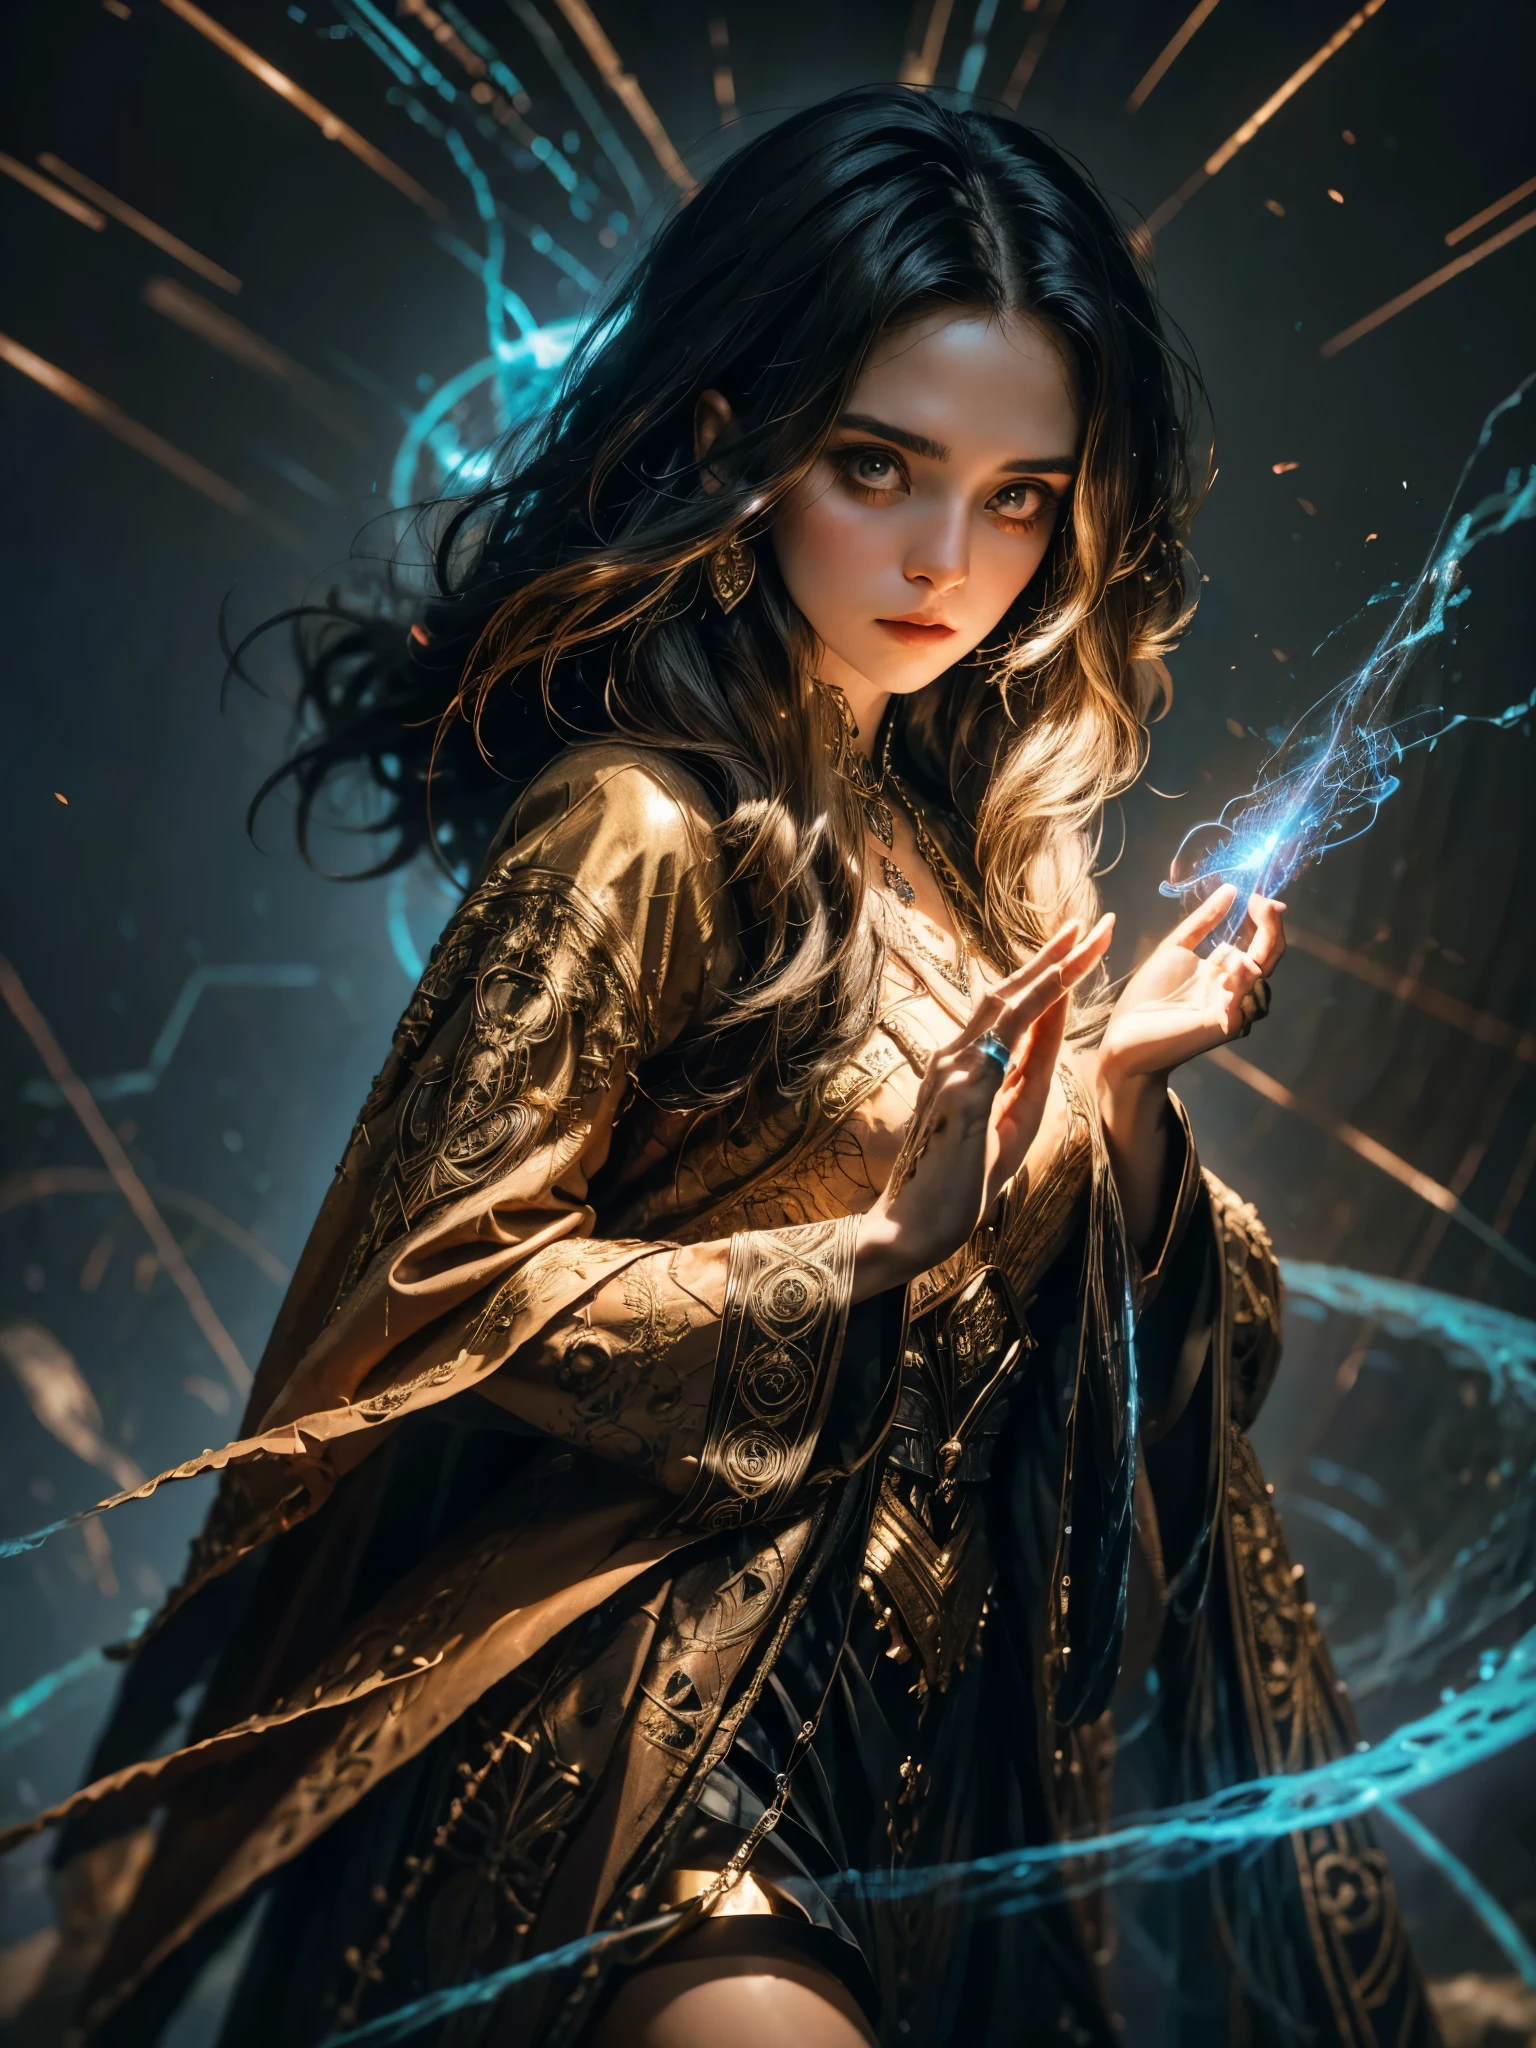 Uma jovem feiticeira está posicionada com uma mão levantada, seus dedos tecem delicadamente padrões intrincados no ar enquanto ela canaliza energia mágica. Suas vestes vibrantes ondulam ao seu redor, adornado com runas e símbolos intrincados que parecem brilhar com poder arcano. Seus olhos brilham com determinação, e fios de energia mágica dançam ao seu redor enquanto ela se prepara para lançar um poderoso feitiço.